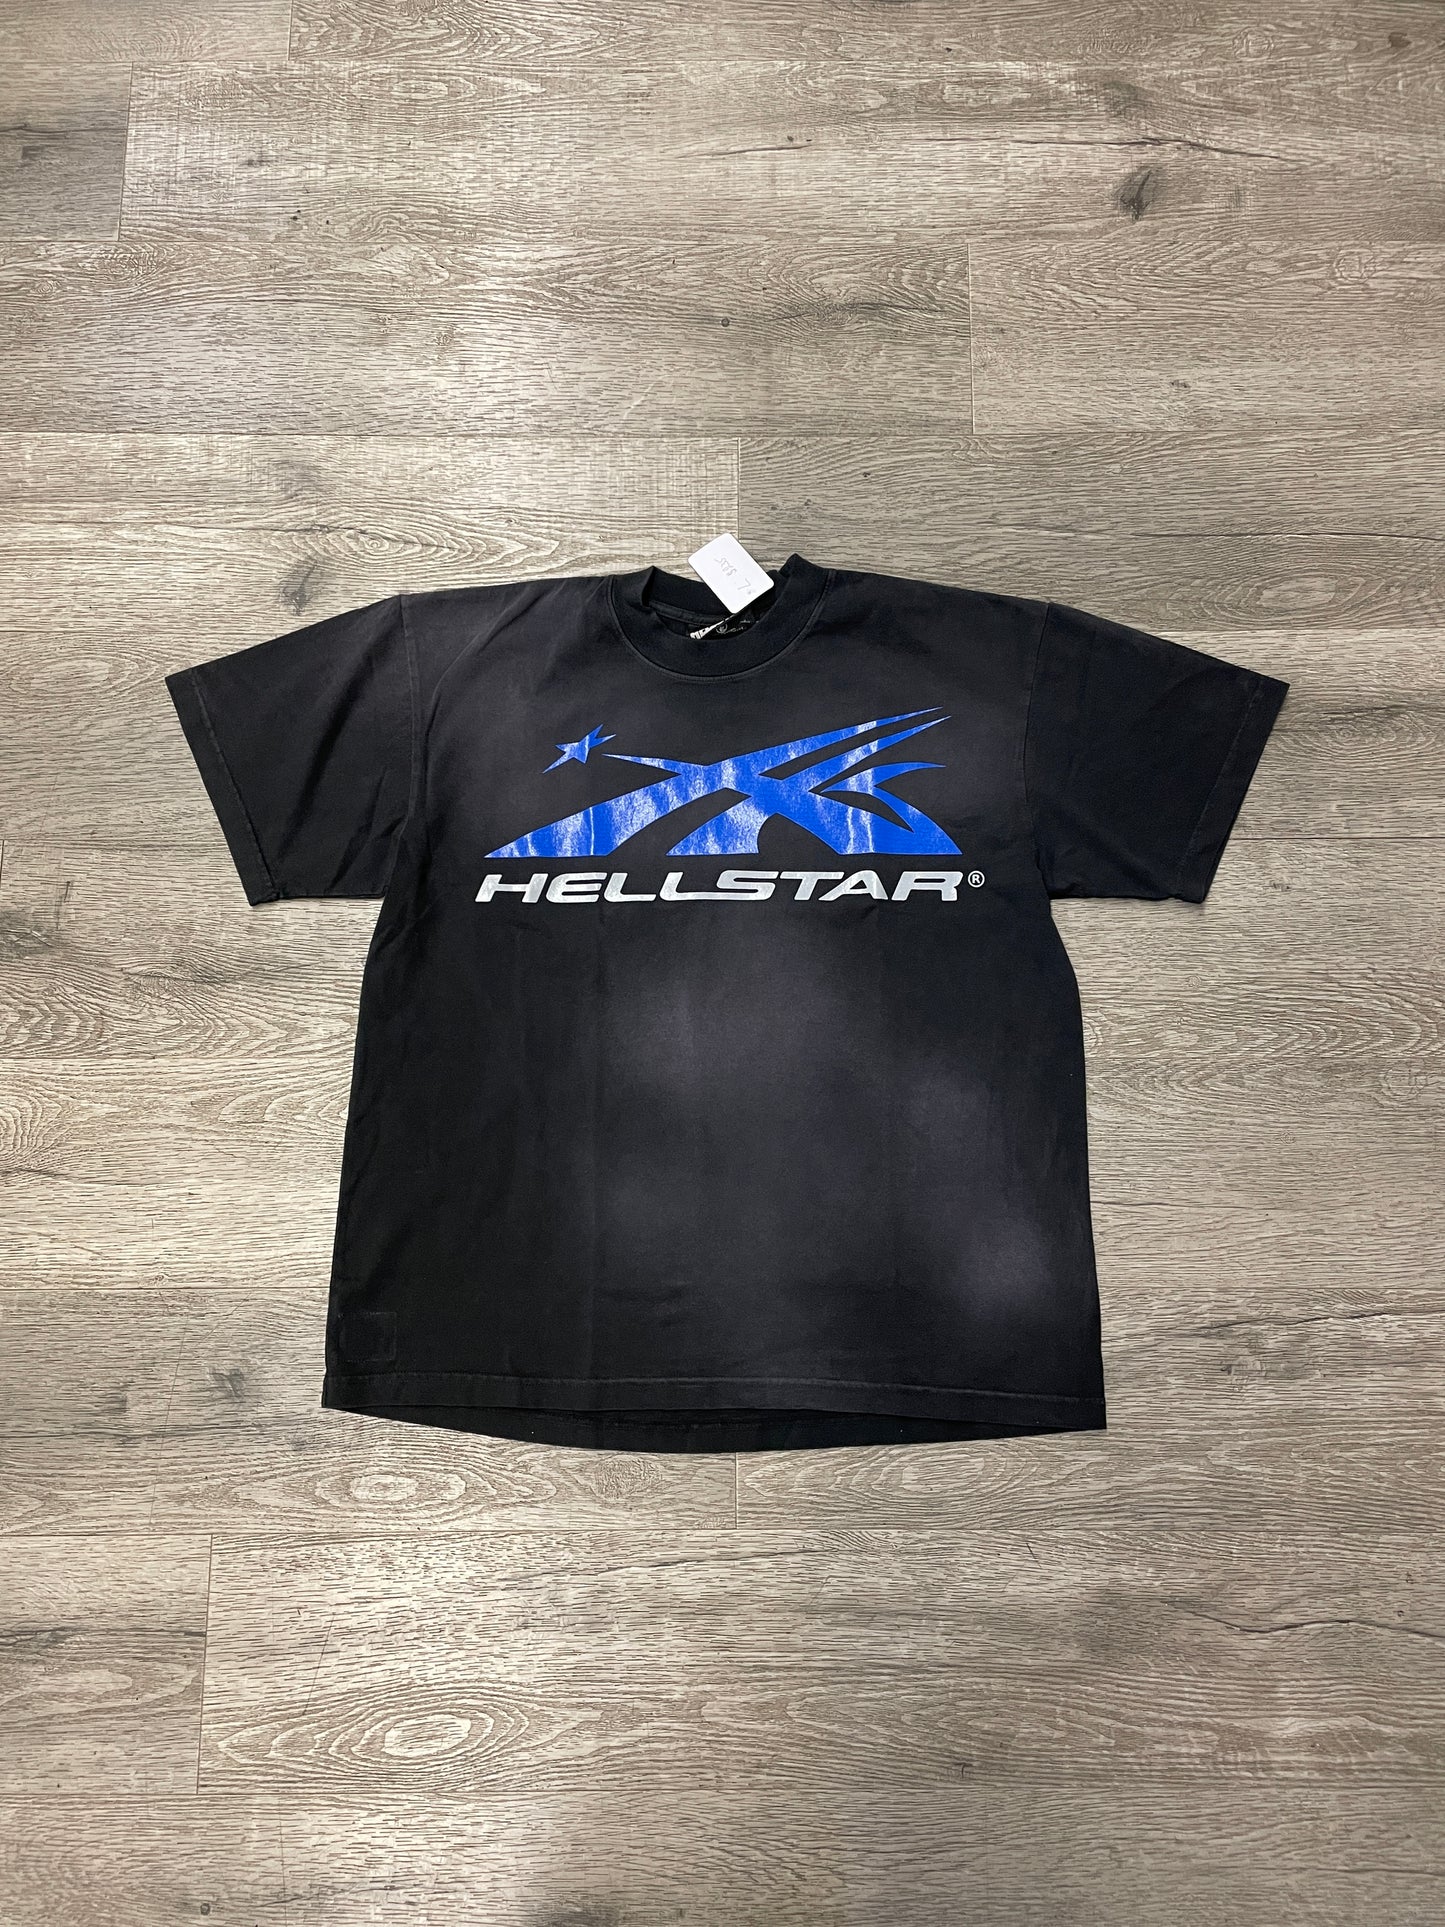 Hellstar Blk/Blue Logo Tee Black